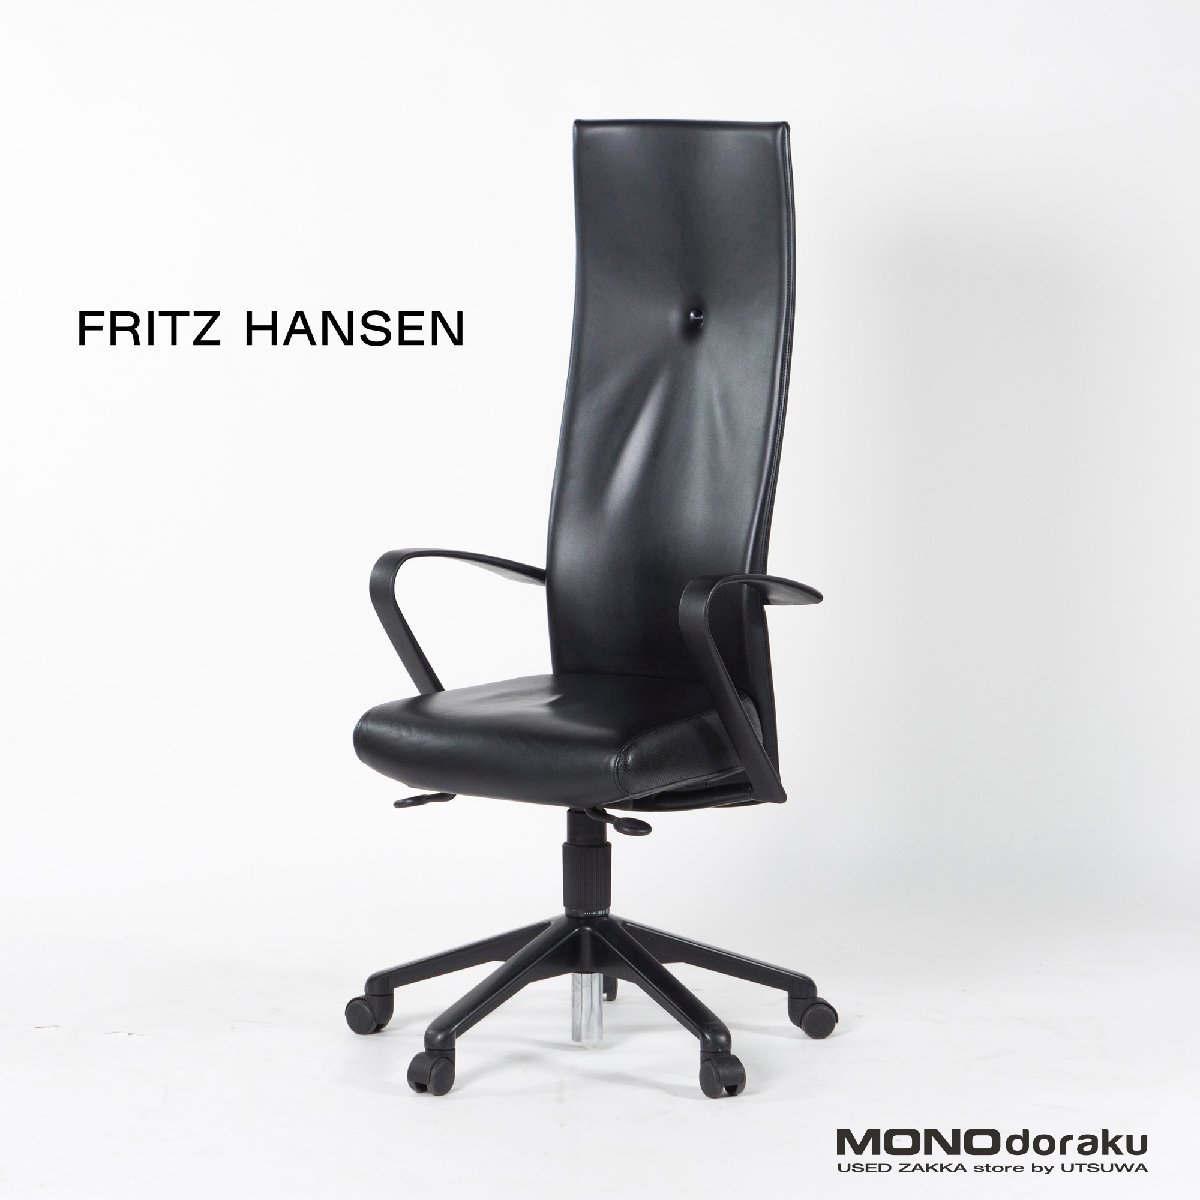 格安販売の Hansen Fritz デスクチェア フリッツハンセン model223M 廃盤希少 OAチェア オフィス ハイバック SPIN/スピンチェア フリッツハンセン